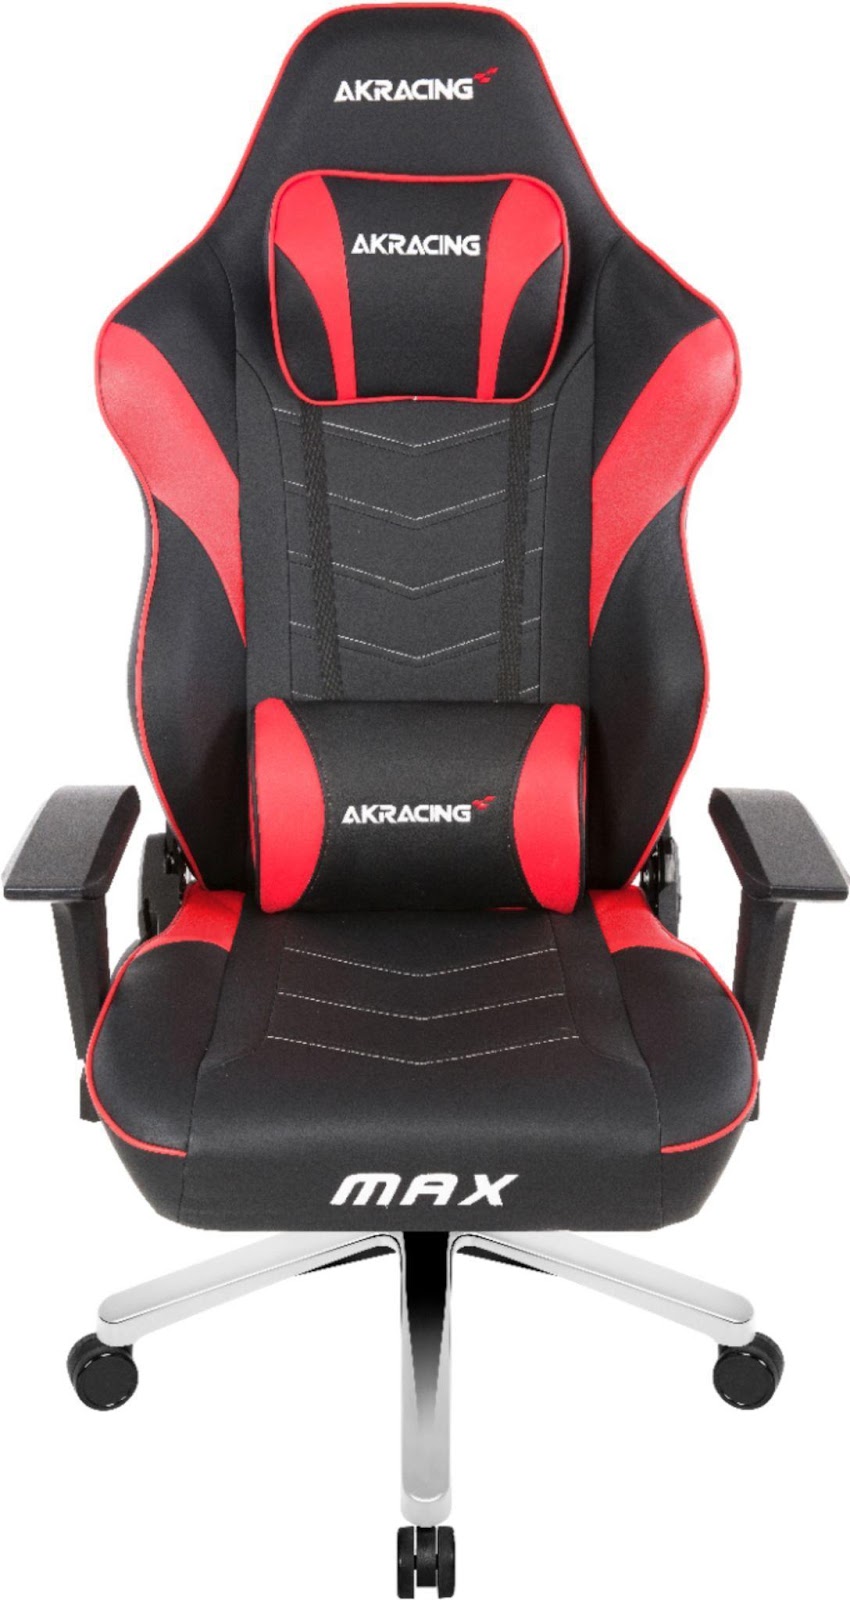 AkRacing Masters Series Max Gaming Chair